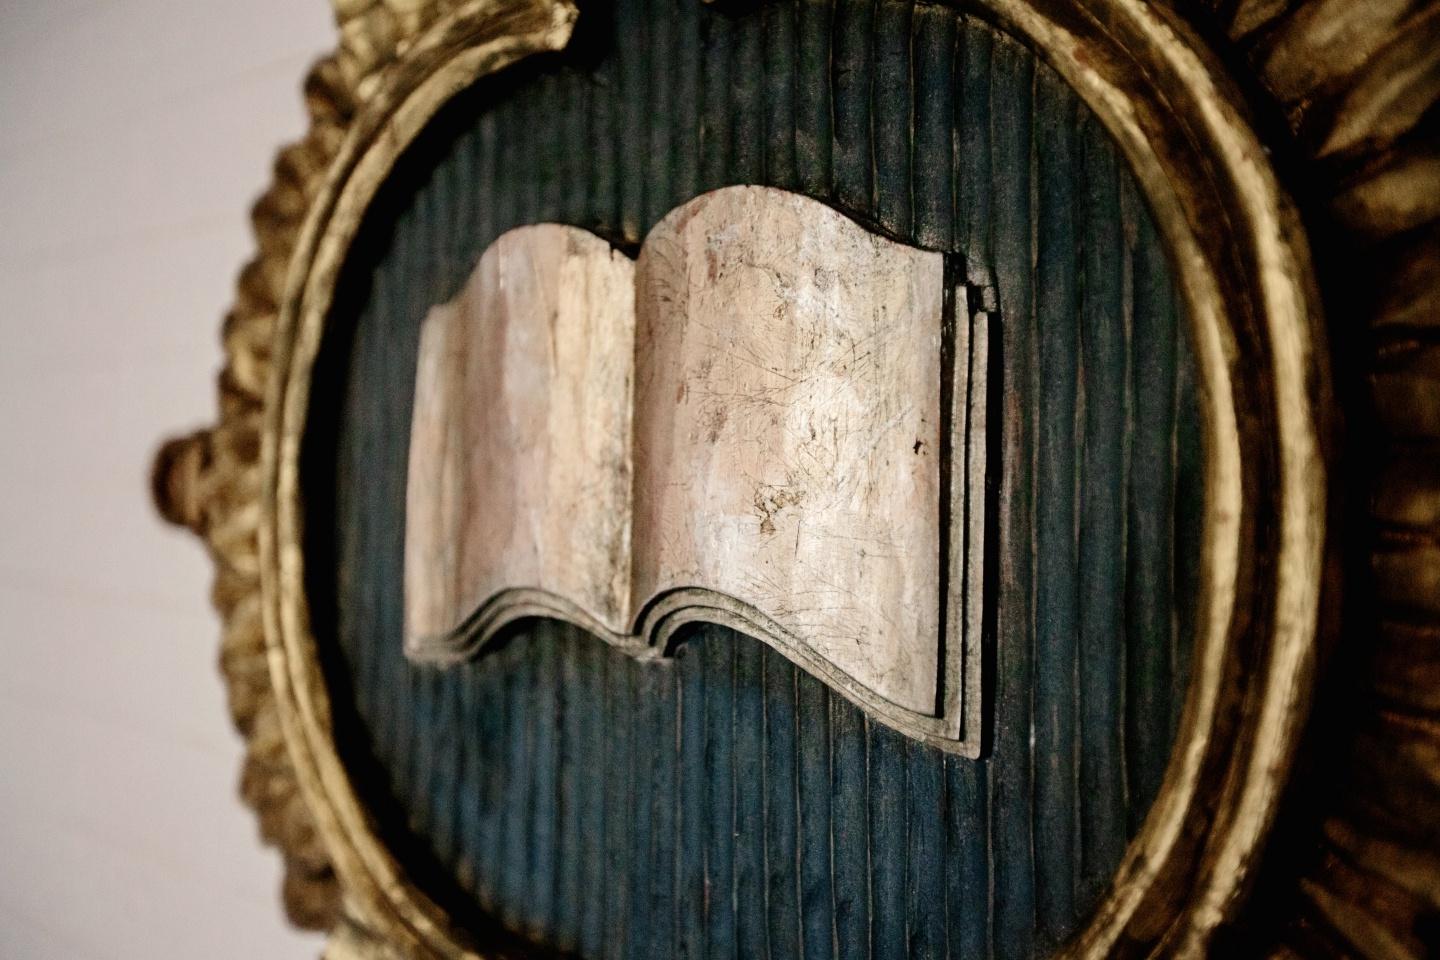 A book open in a circular gold frame